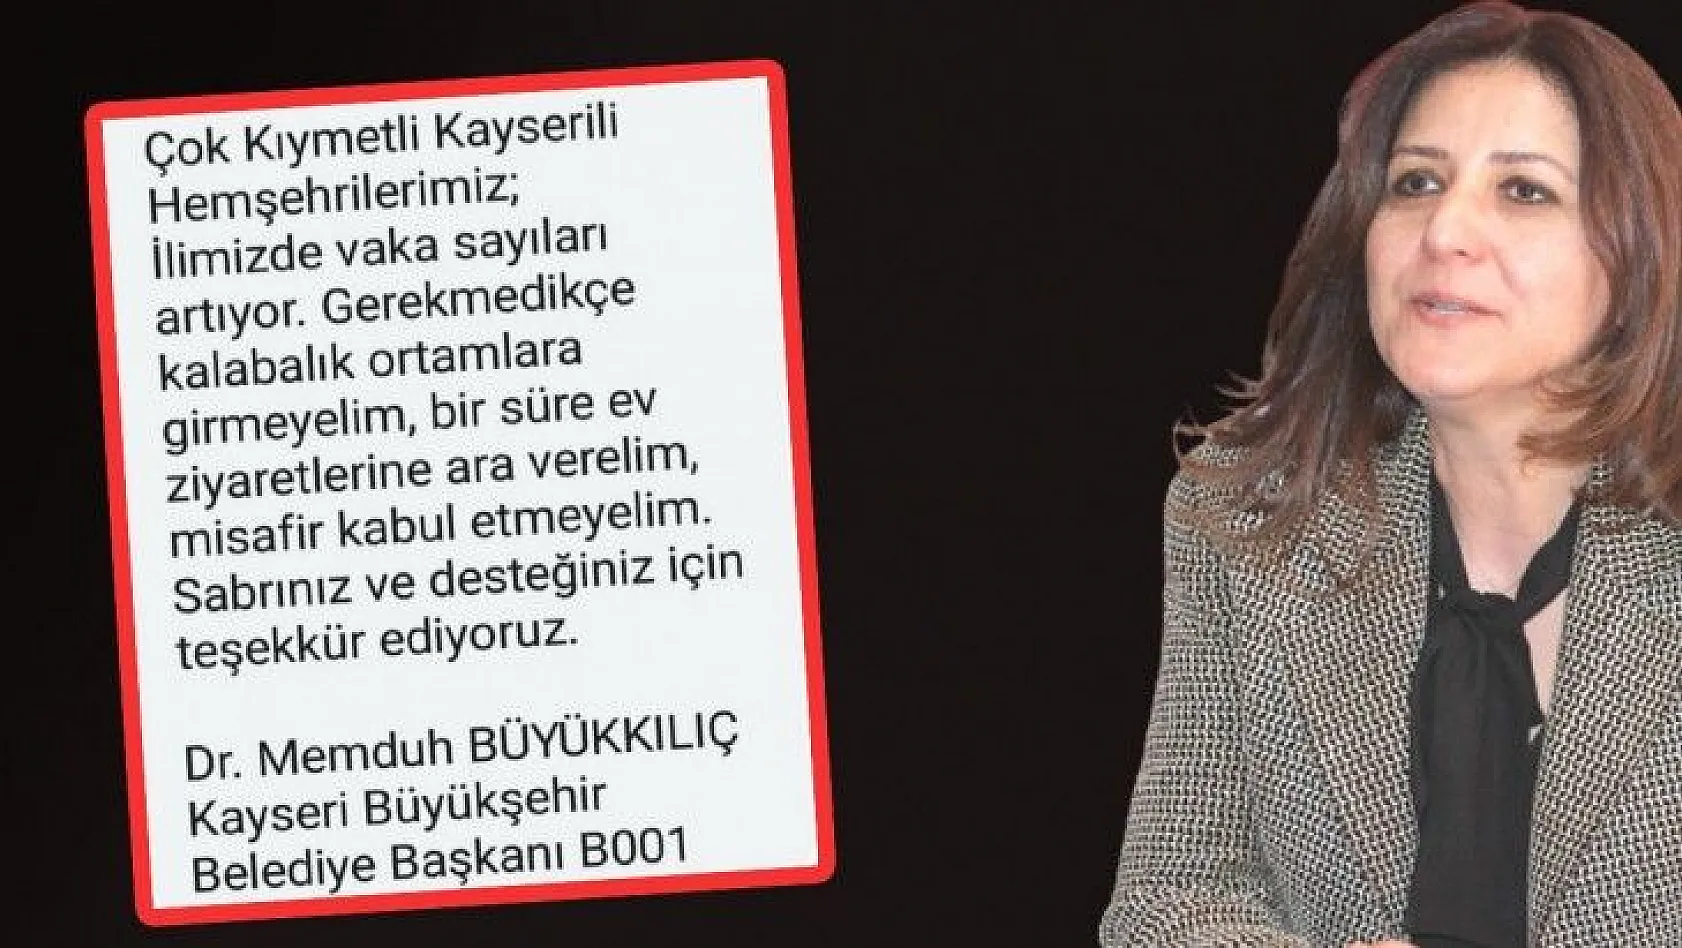 CHP'den, Büyükkılıç'ın o mesajına tepki: Bari vatandaşın parasıyla samimiyetsiz mesaj atmayın!